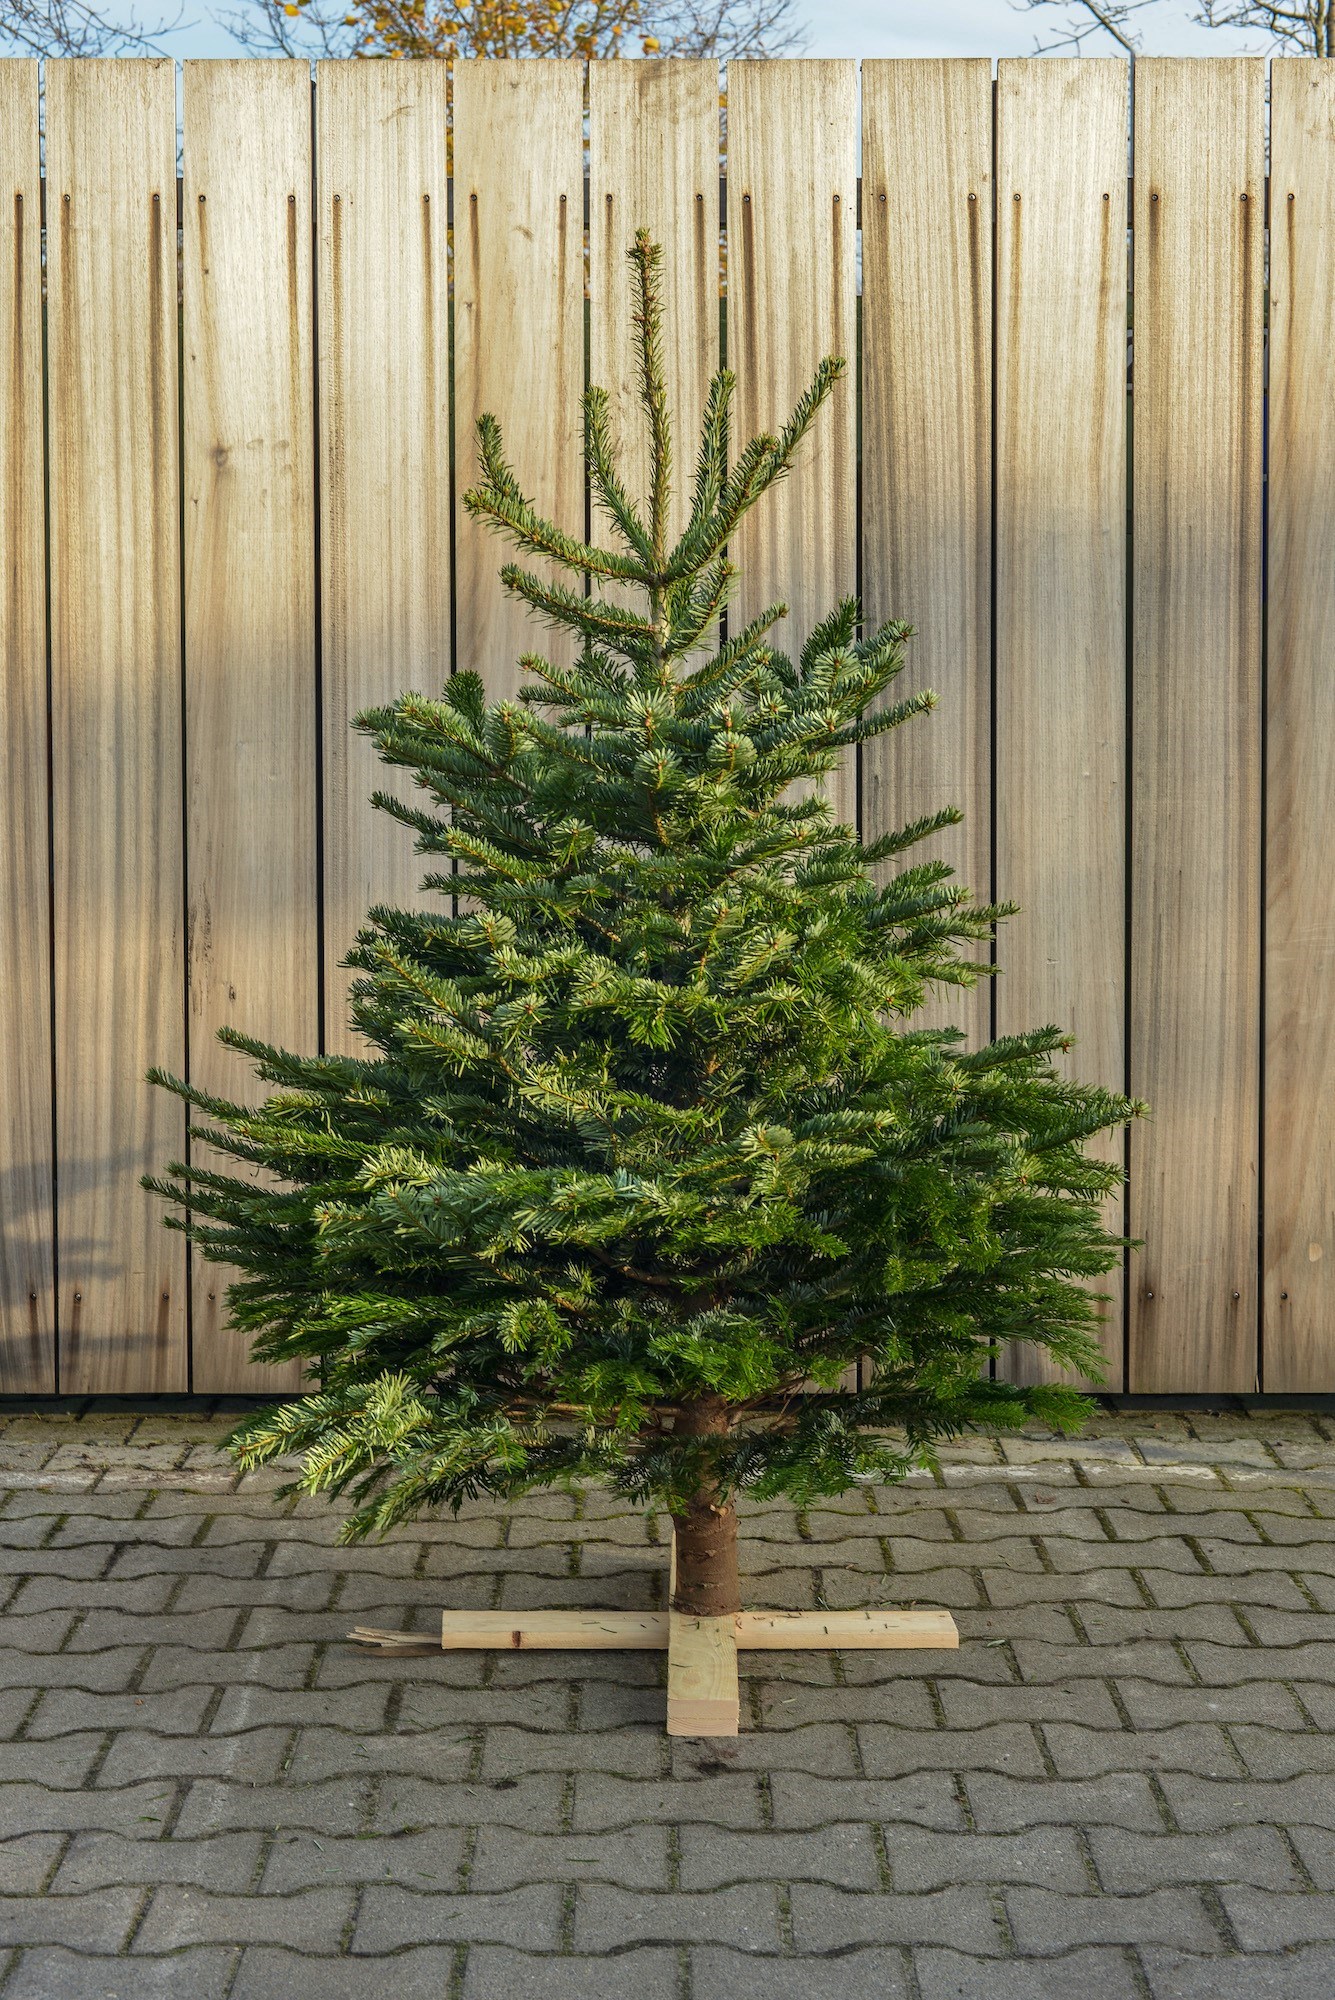 hardware vijver Stralend Voor inwoners van Brabant koop online je kerstboom bij Tuindingen.nl en we  leveren gratis aan huis We selecteren de mooiste bomen Bepaal zelf wanneer  wij de kerstboom thuis bezorgen Rechtstreeks van de kwekerij bezorgen wij  gratis in heel de ...